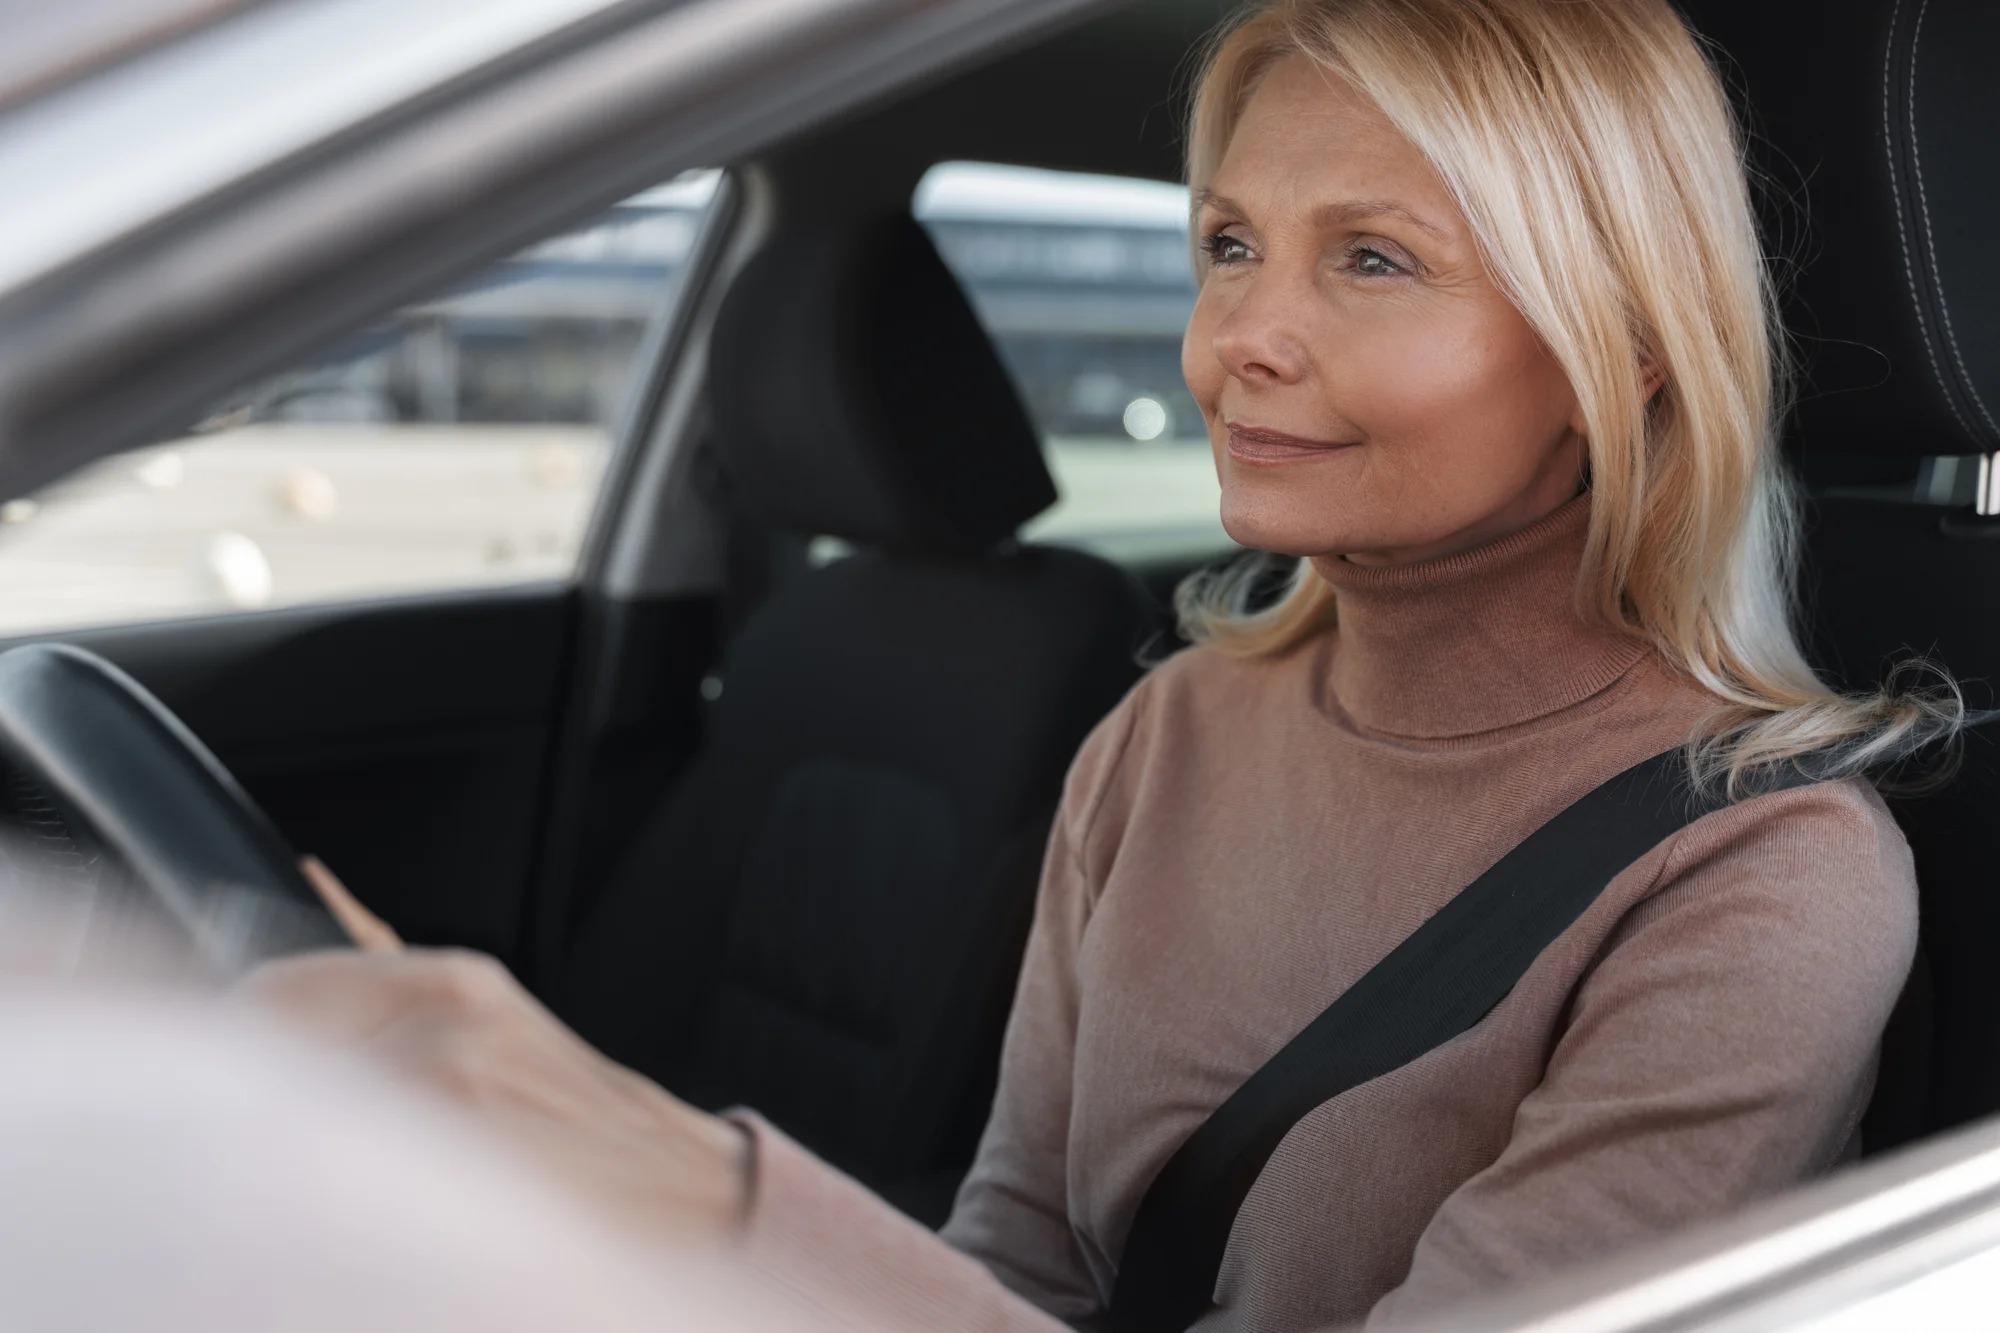 Mujer conduciendo - Curso de recuperación de puntos del carnet de conducir - CertificadoElectronico.es